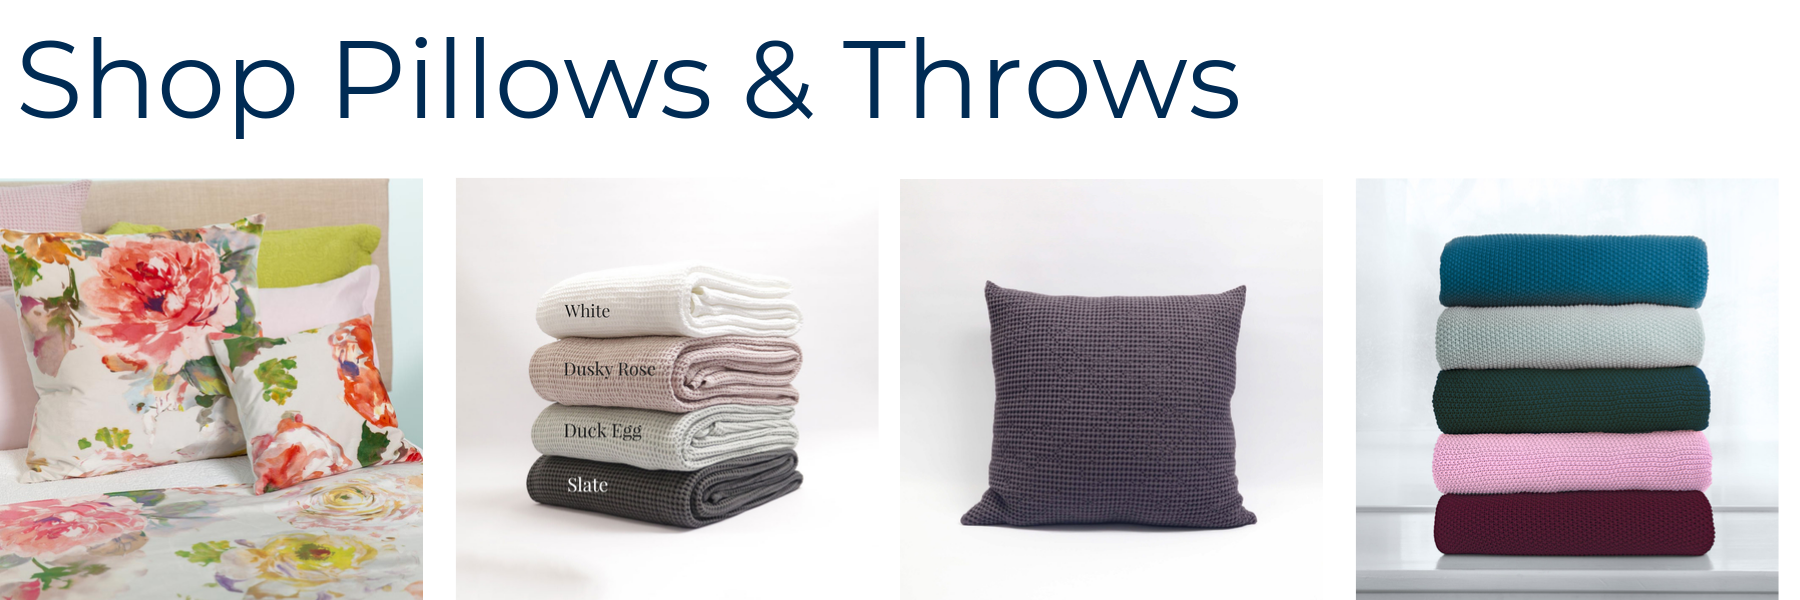 Pillows & Throws